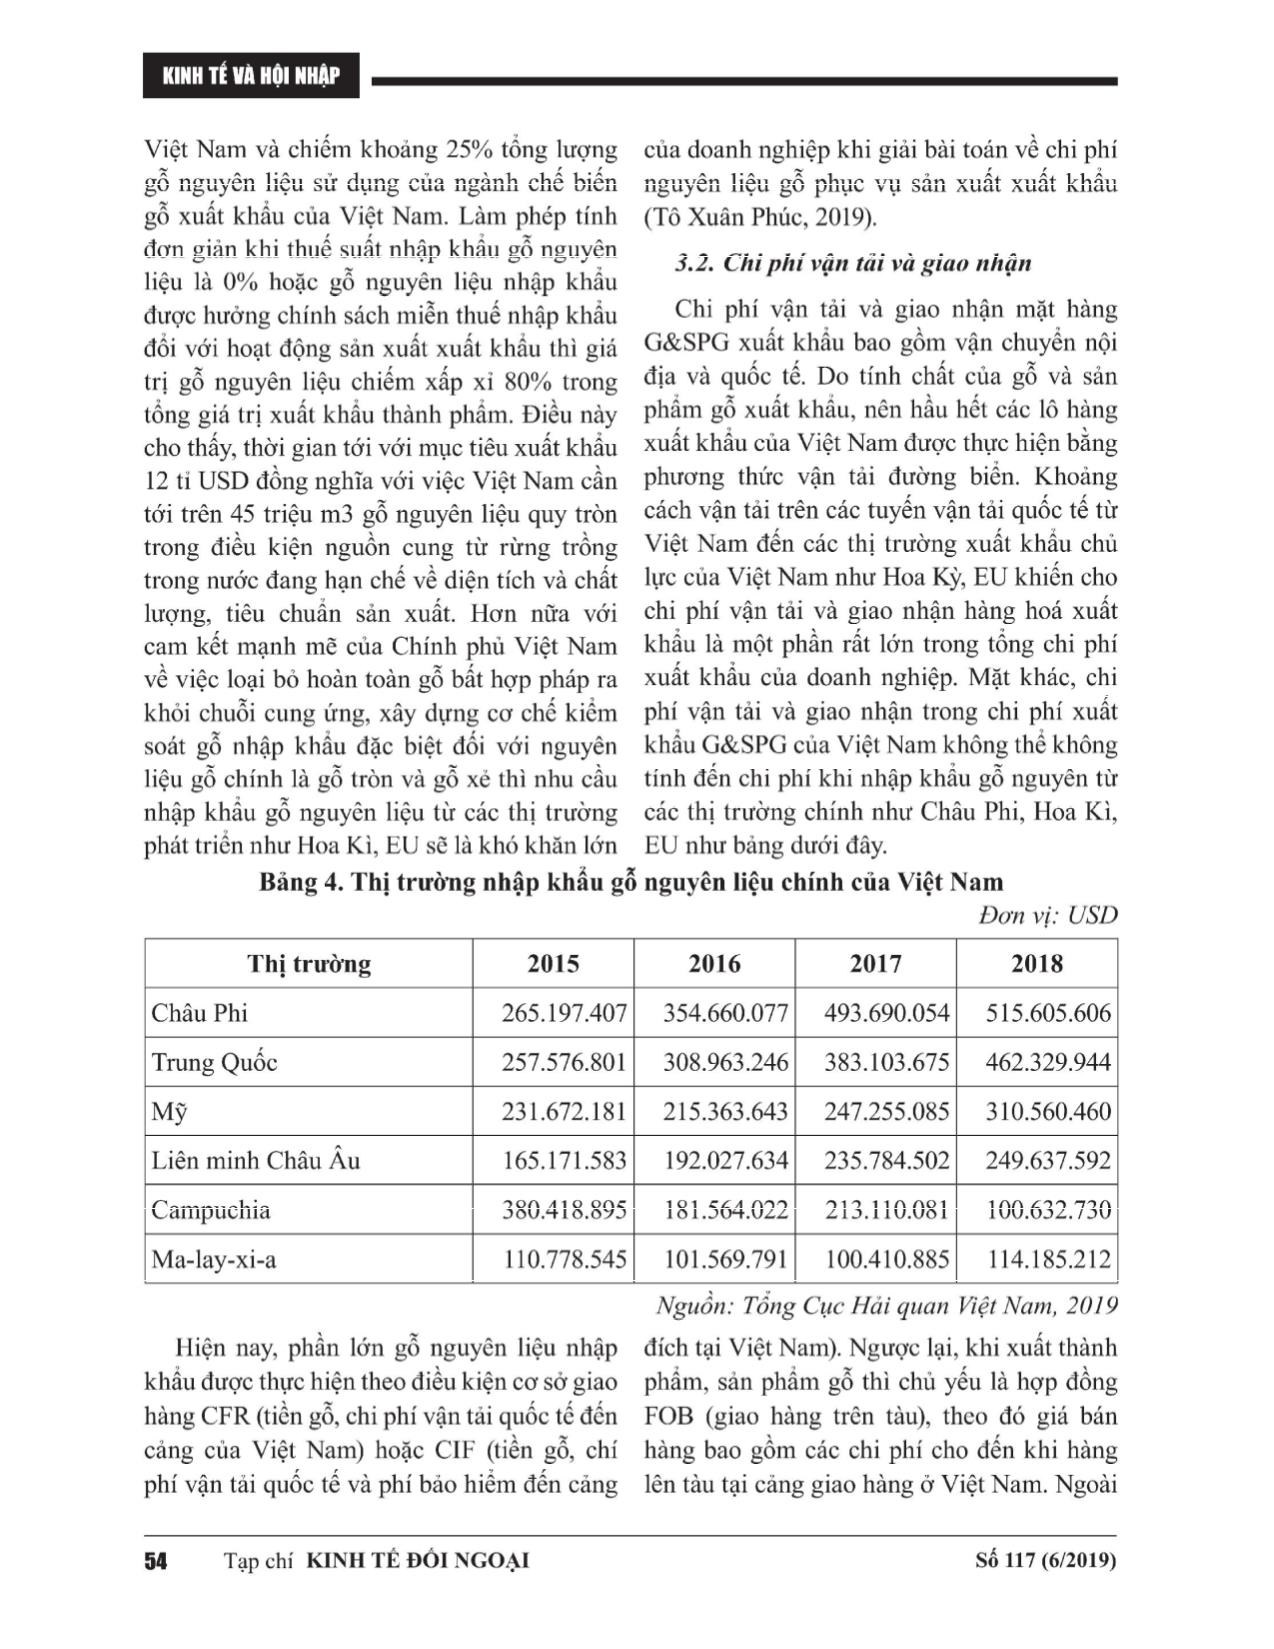 Chi phí xuất khẩu gỗ và sản phẩm gỗ của Việt Nam: Góc nhìn từ chuỗi giá trị sản phẩm trang 7